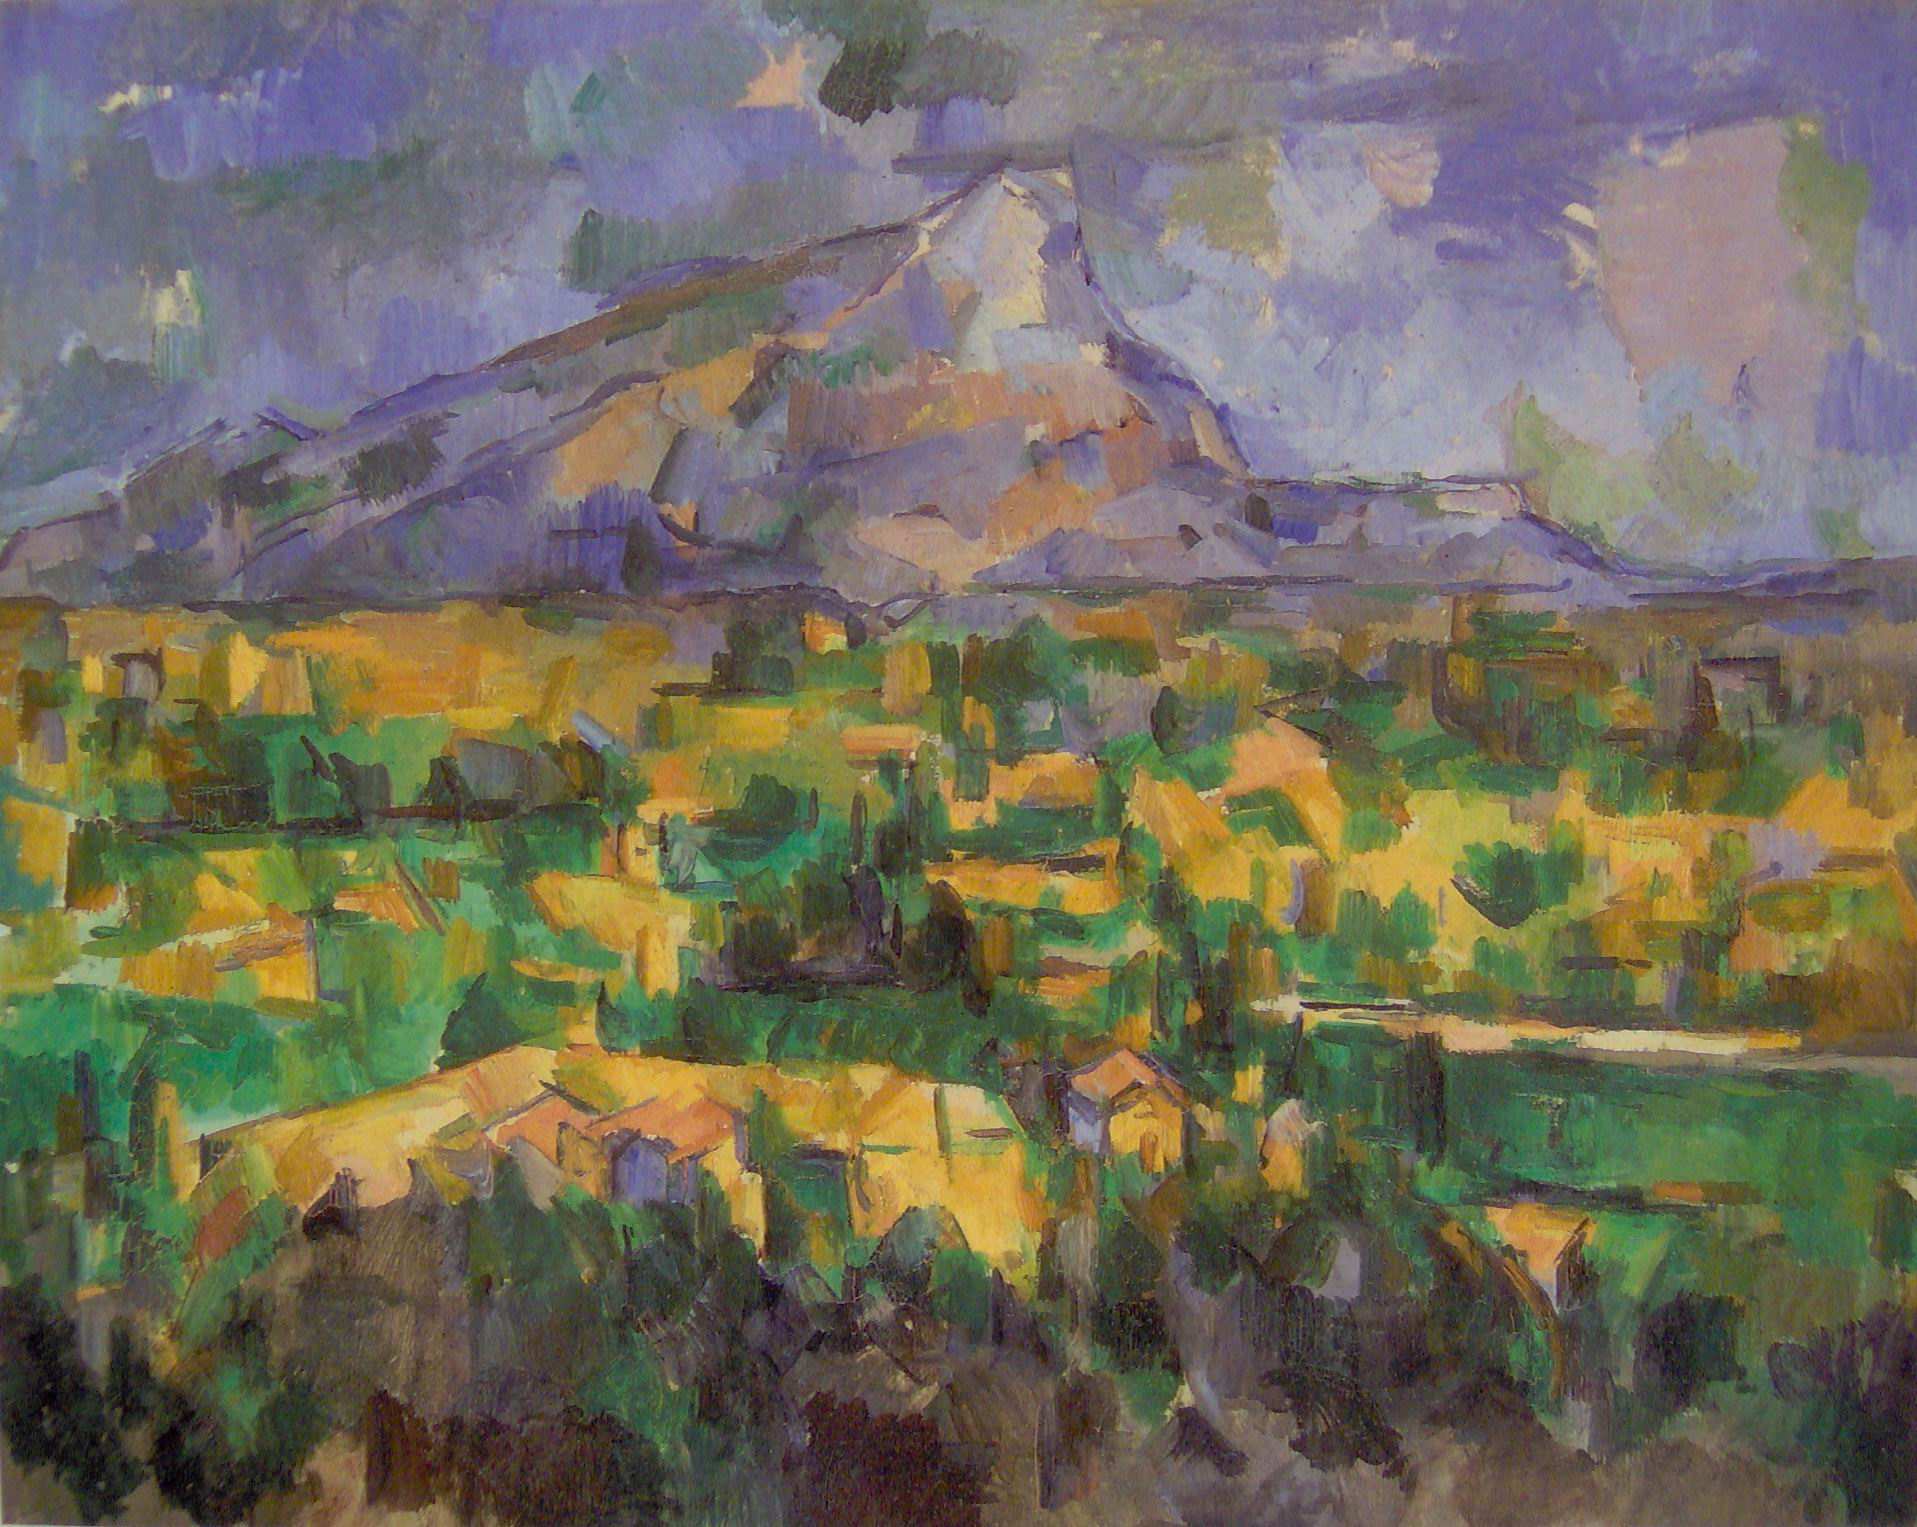 Τίτλος: Το βουνό Sainte-Victoire Καλλιτέχνης: Σεζάν Χρονολογία: 1886-88 Περιγραφή: το έργο αυτό ανήκει σε µία σειρά έργων που ο ζωγράφος έκανε µε το ίδιο θέµα στην προσπάθειά του όπως είχε δηλώσει να